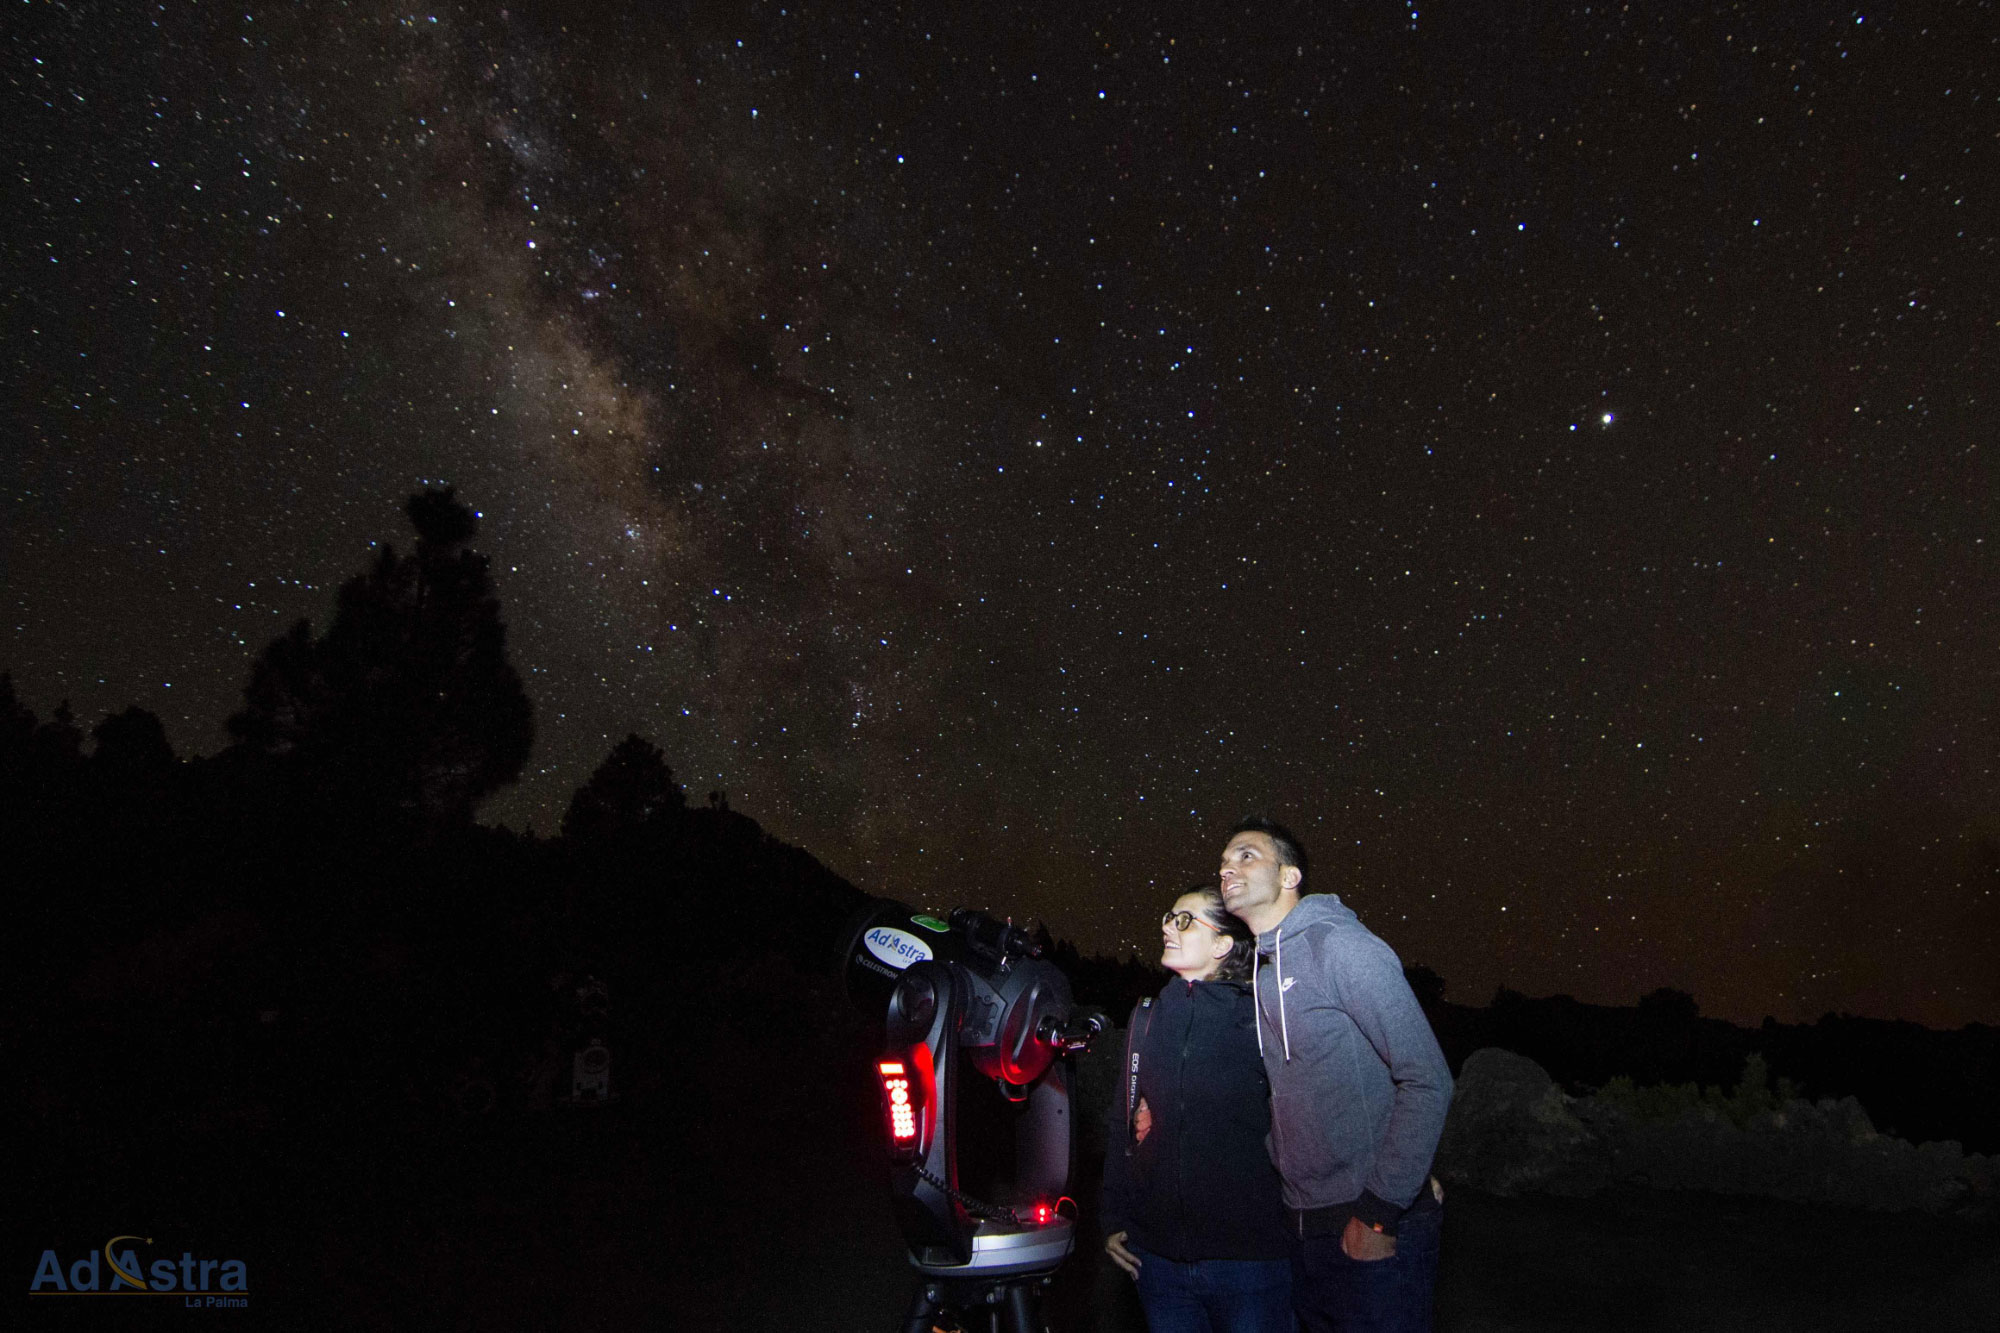 Astro experiencia Vip en La Palma para parejas